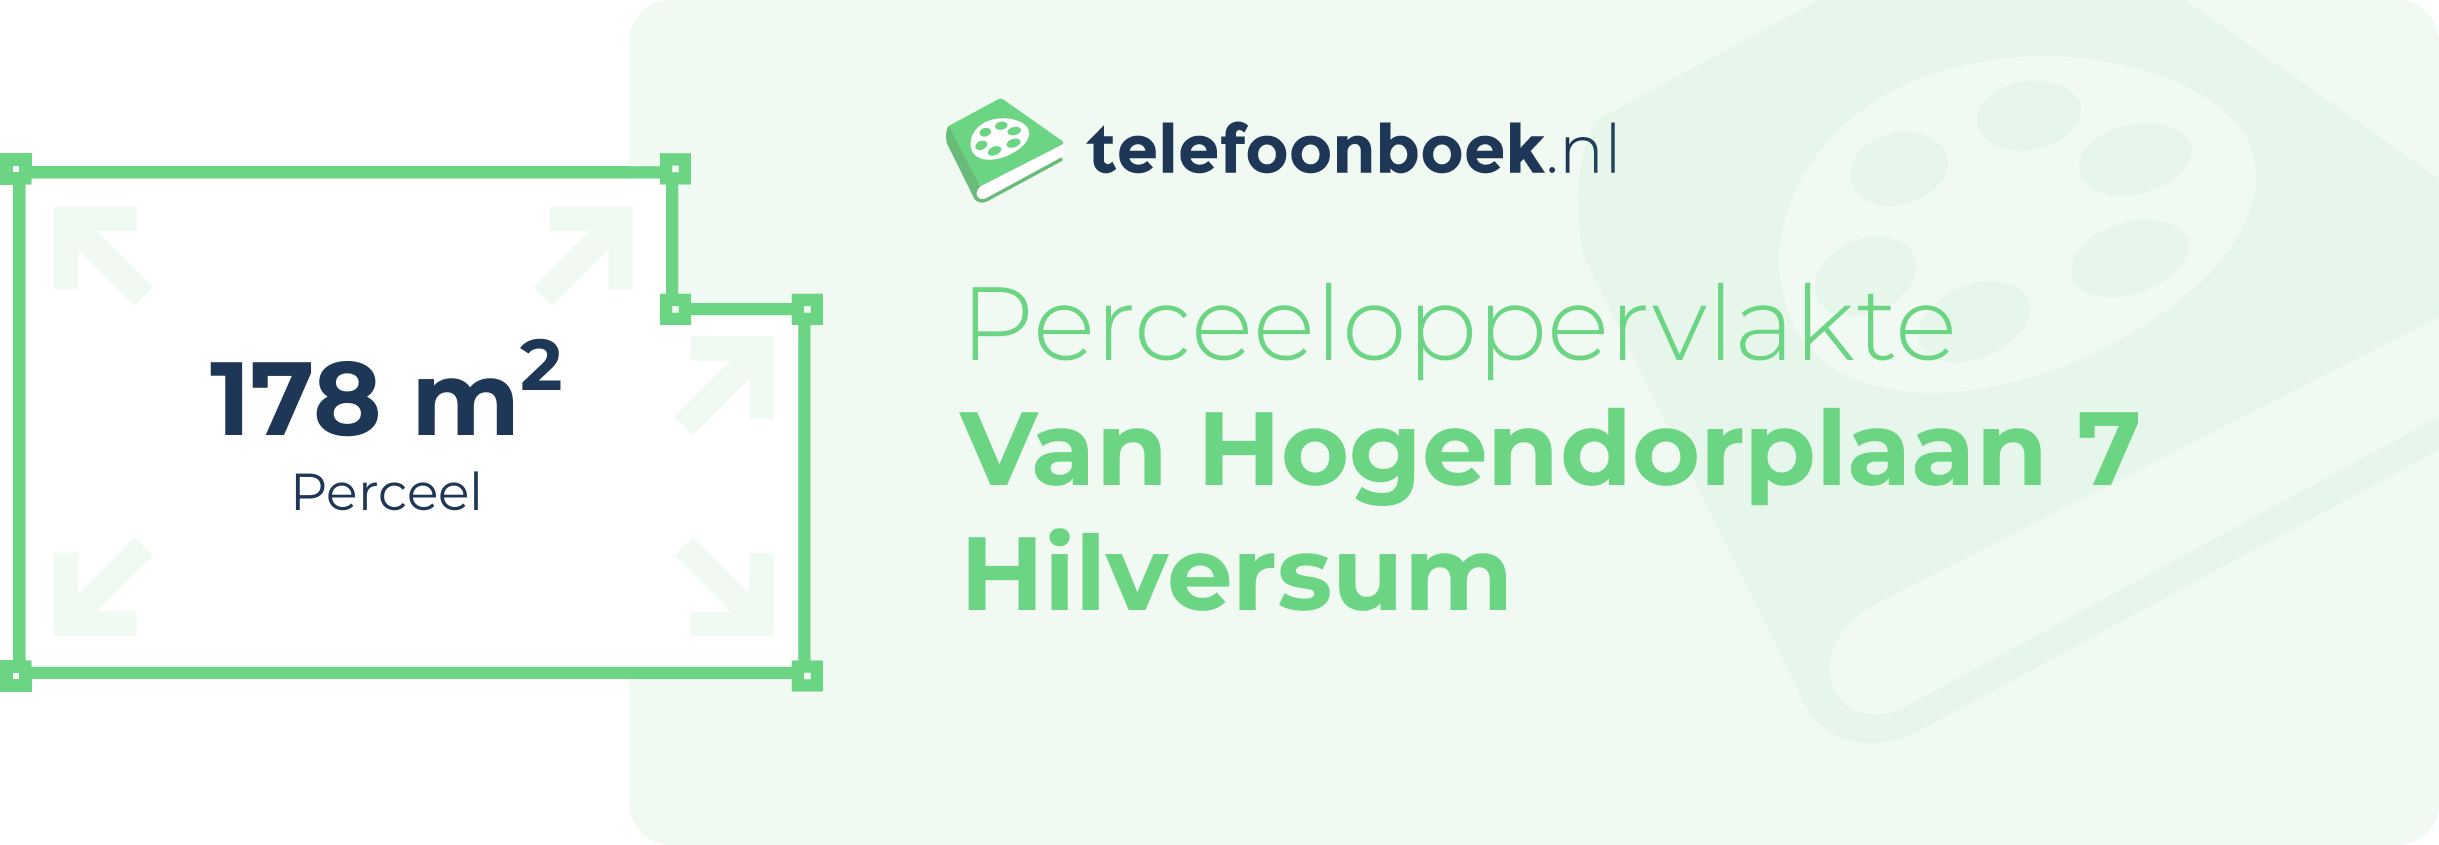 Perceeloppervlakte Van Hogendorplaan 7 Hilversum